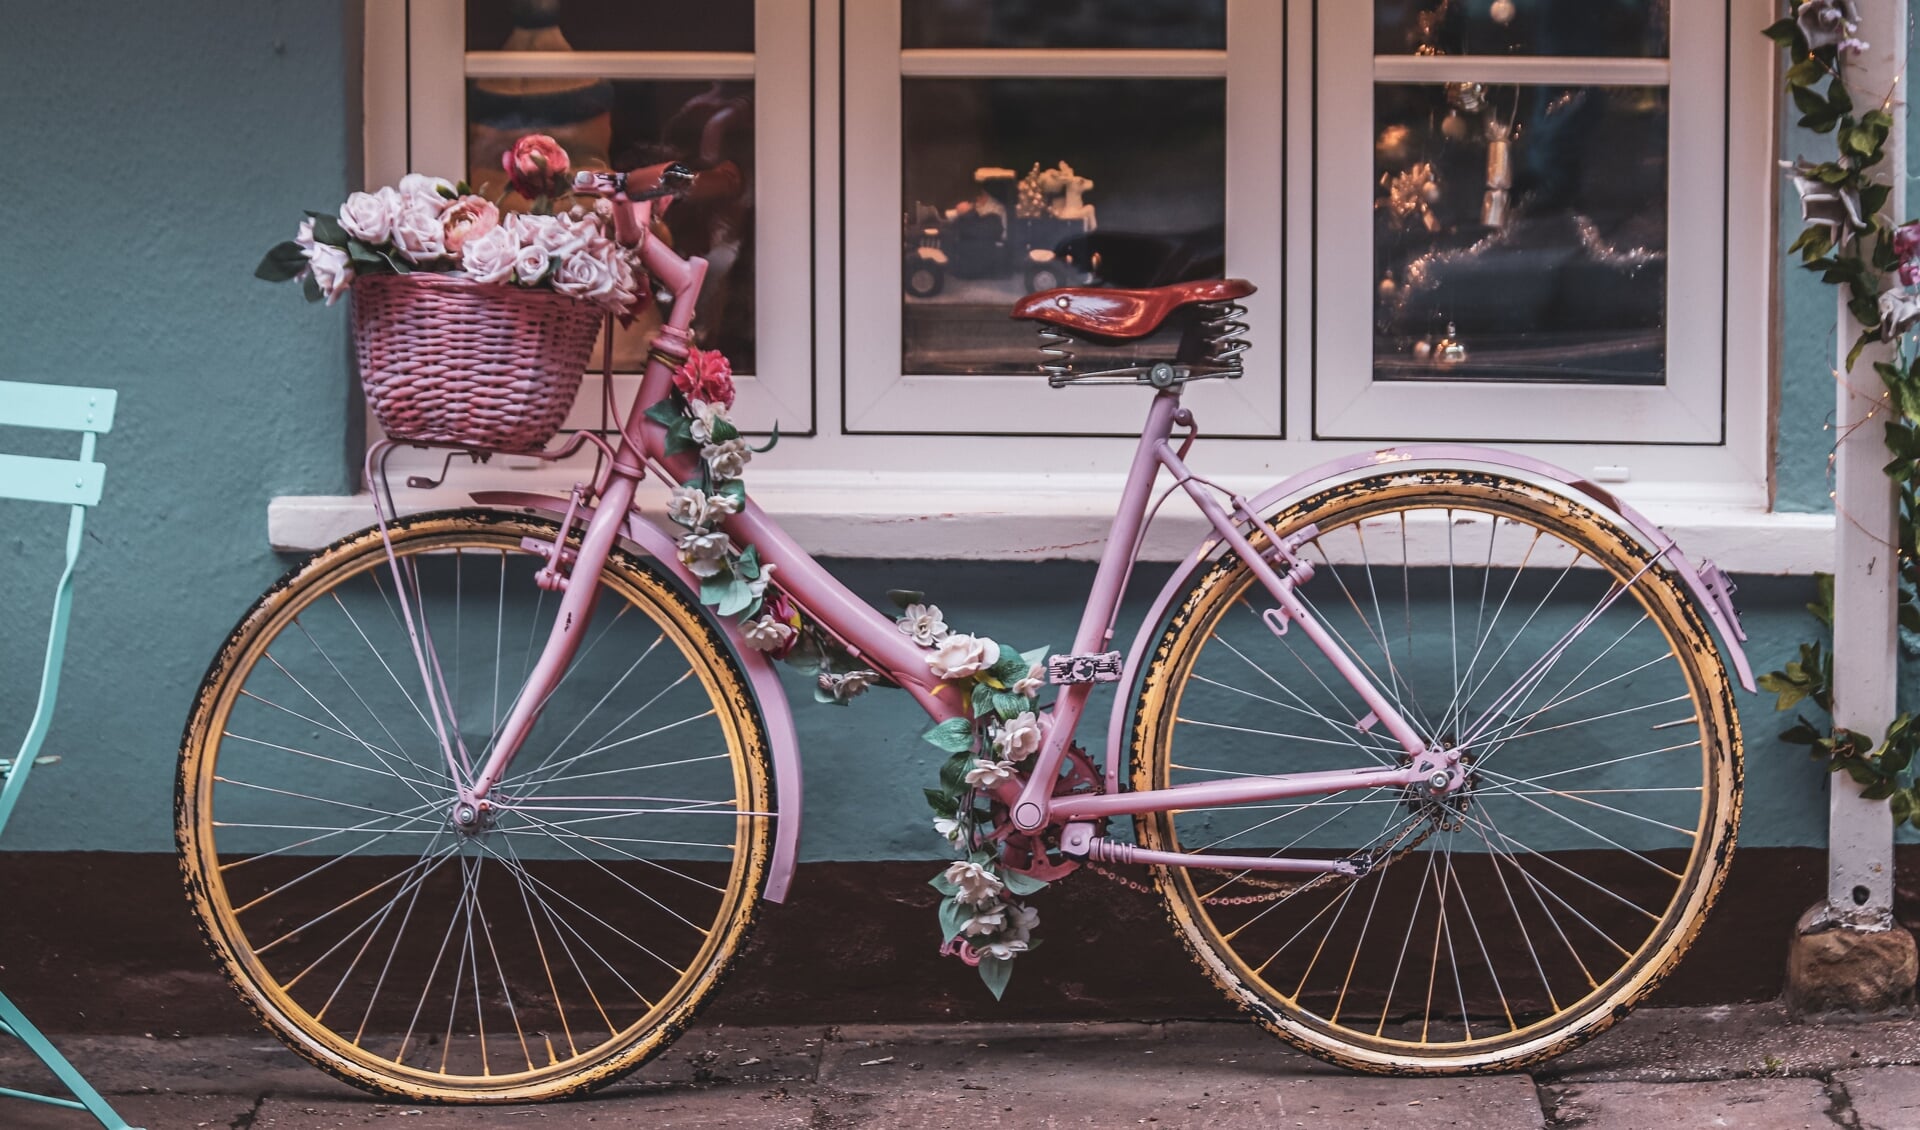 De gemeente Valkenswaard roept kinderen op om zondag met een mooi versierde fiets te komen.